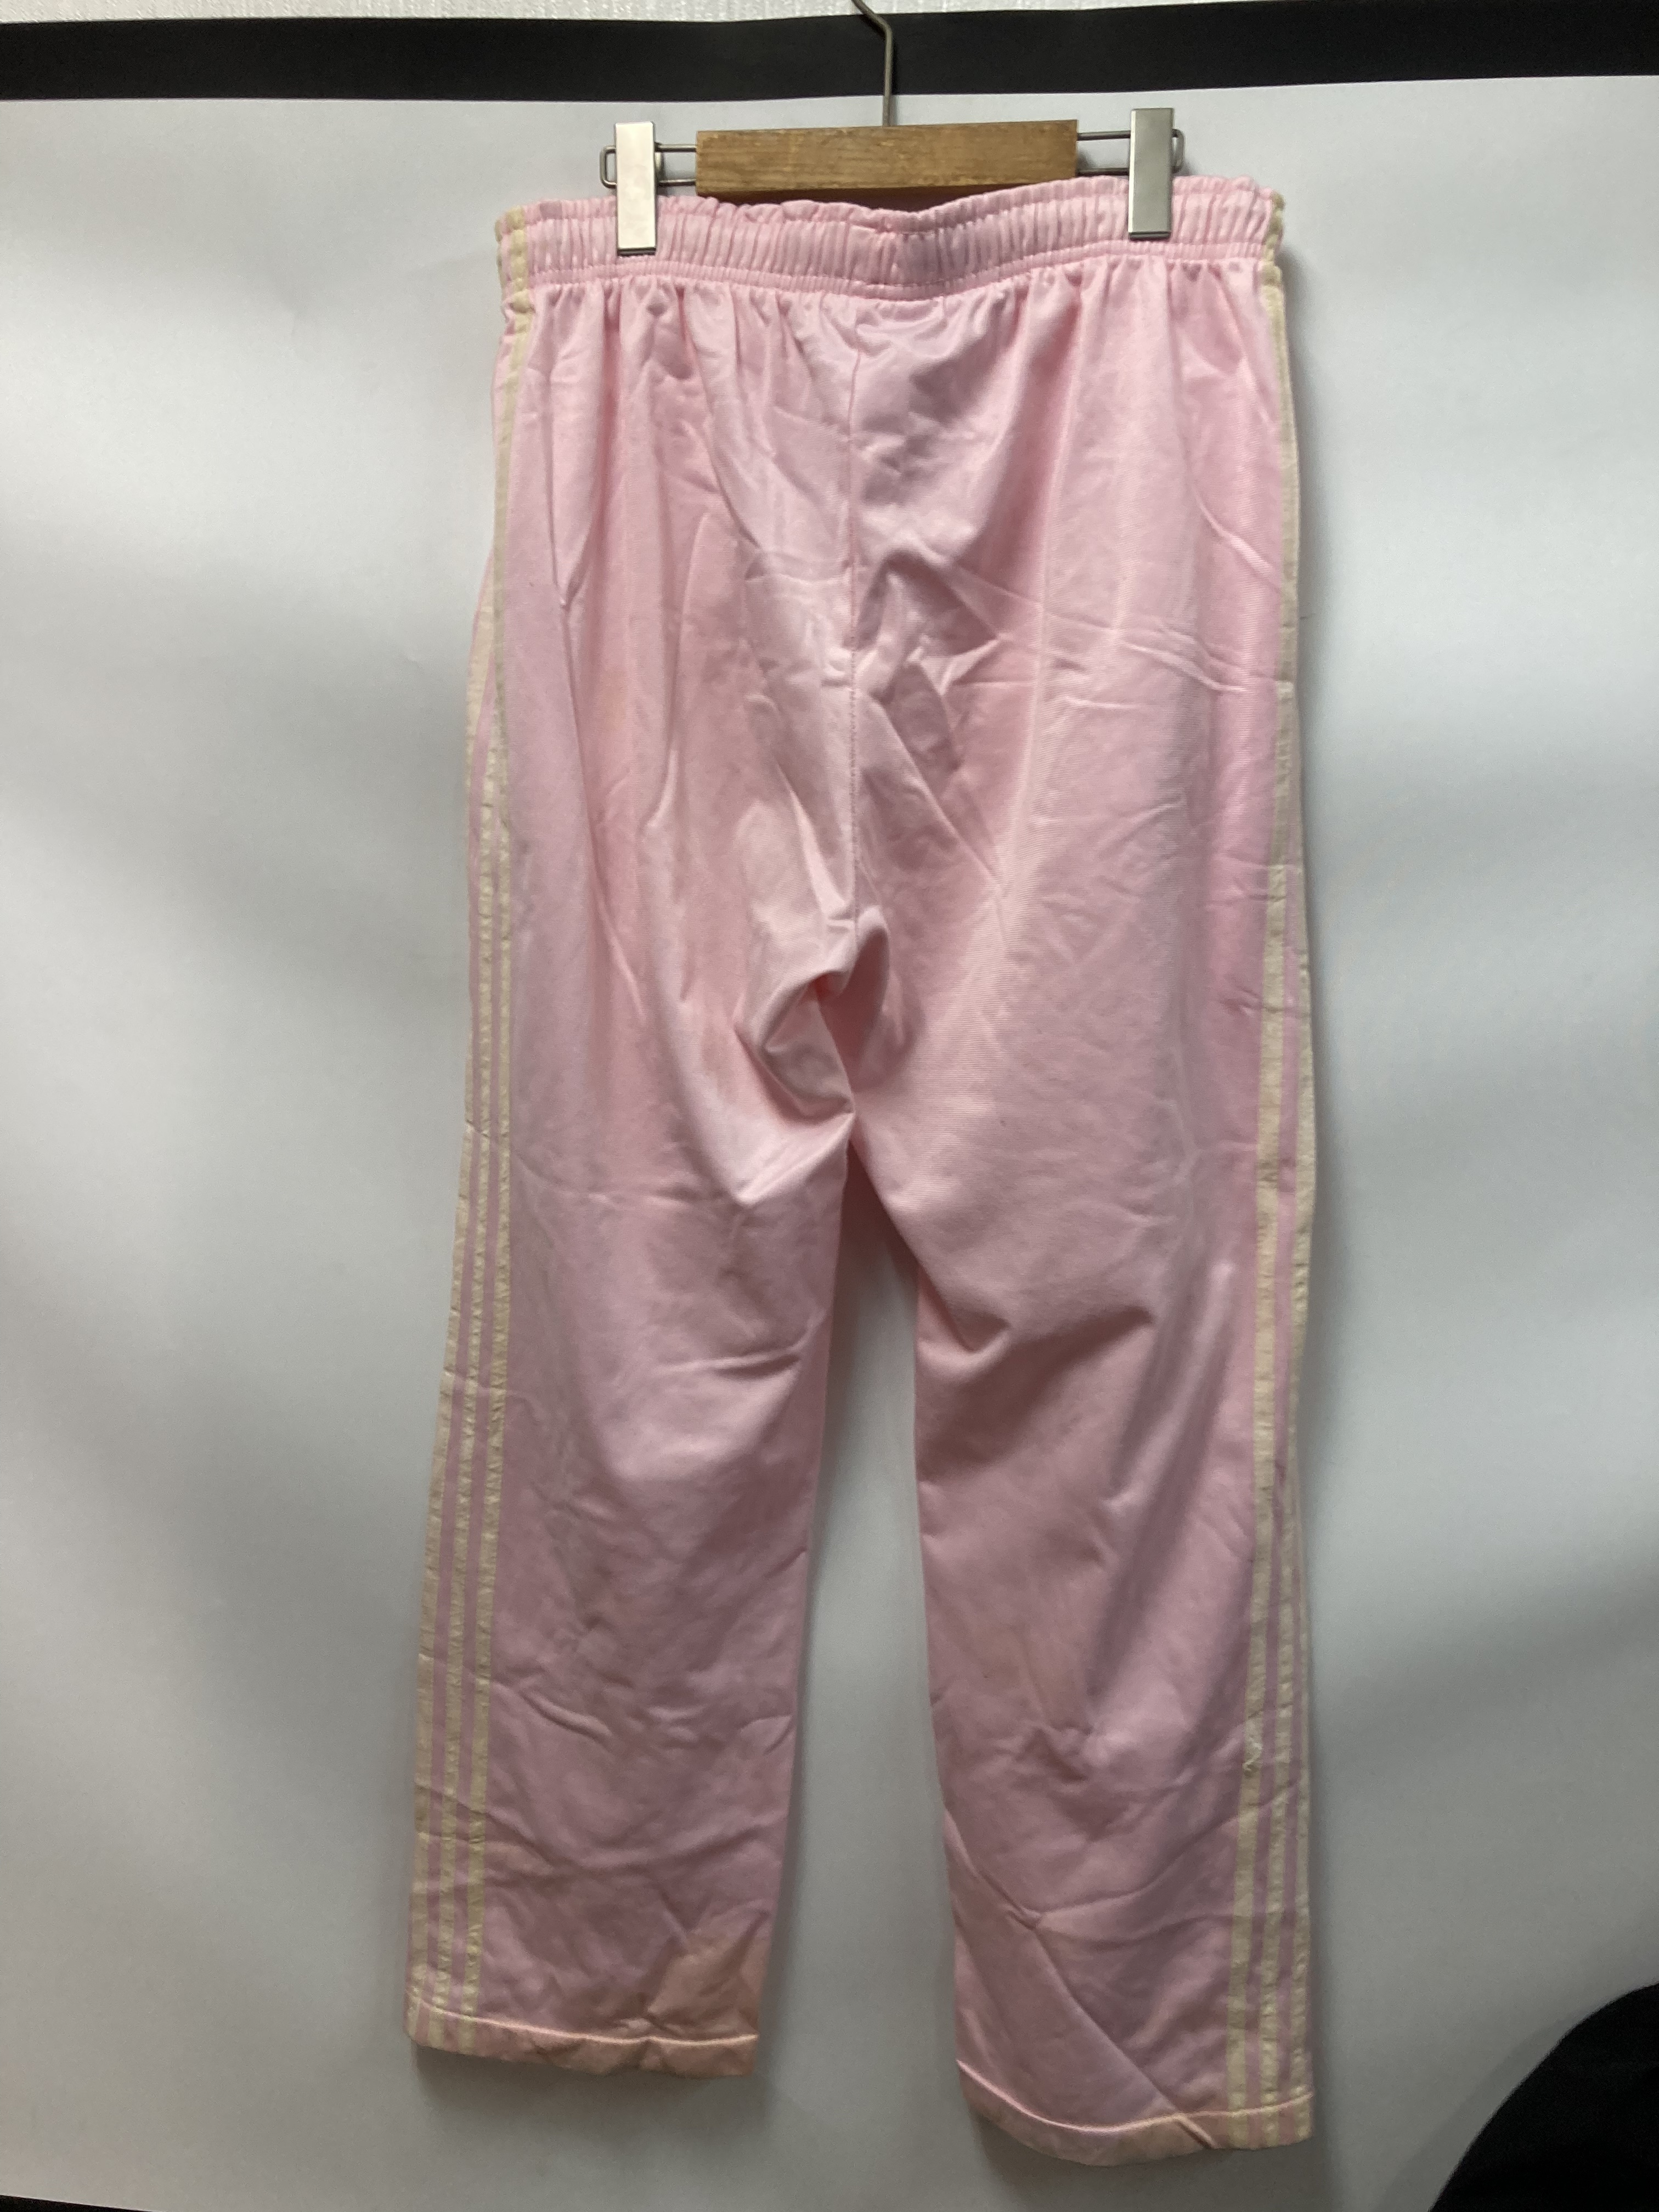 日本本物00s adidas vtg ジャージ パンツ ピンク オリジナルス デサント パンツ